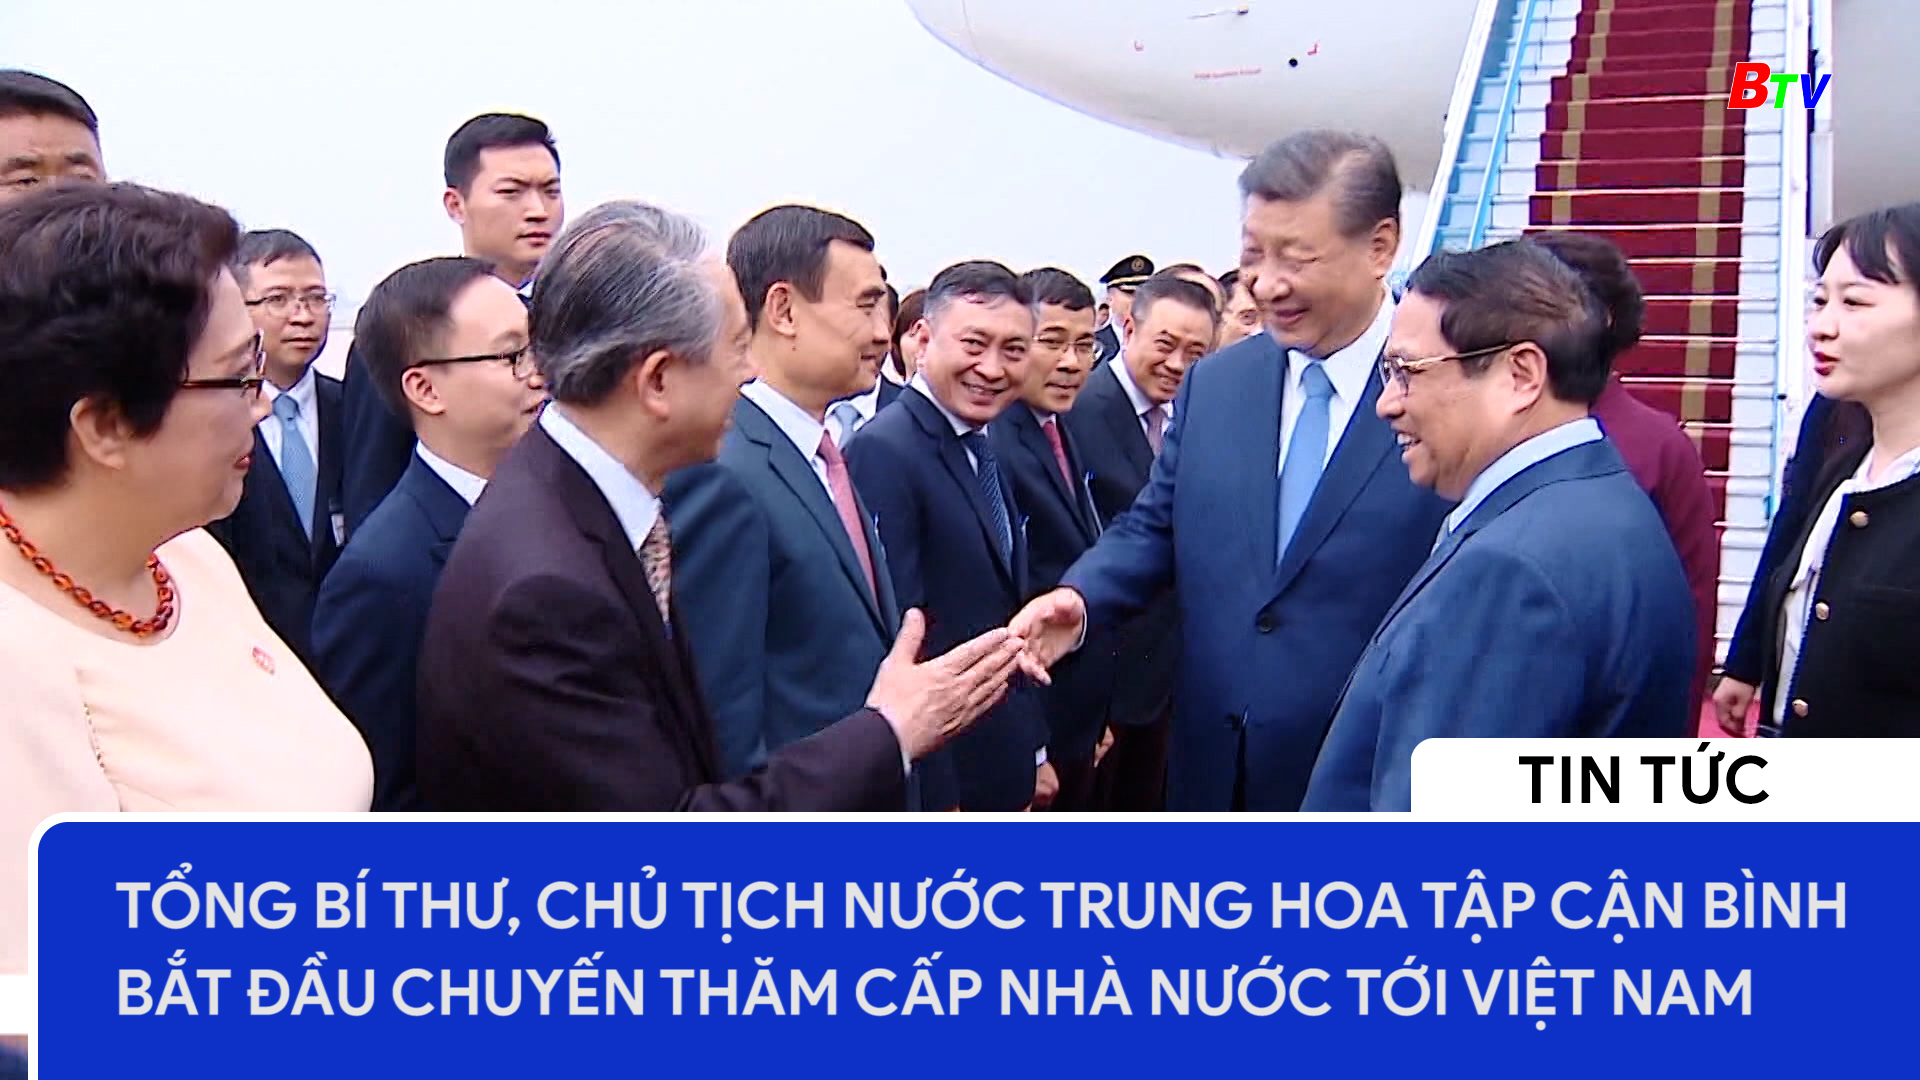 Tổng Bí thư, Chủ tịch nước Trung Hoa Tập Cận Bình bắt đầu chuyến thăm cấp Nhà nước tới Việt Nam